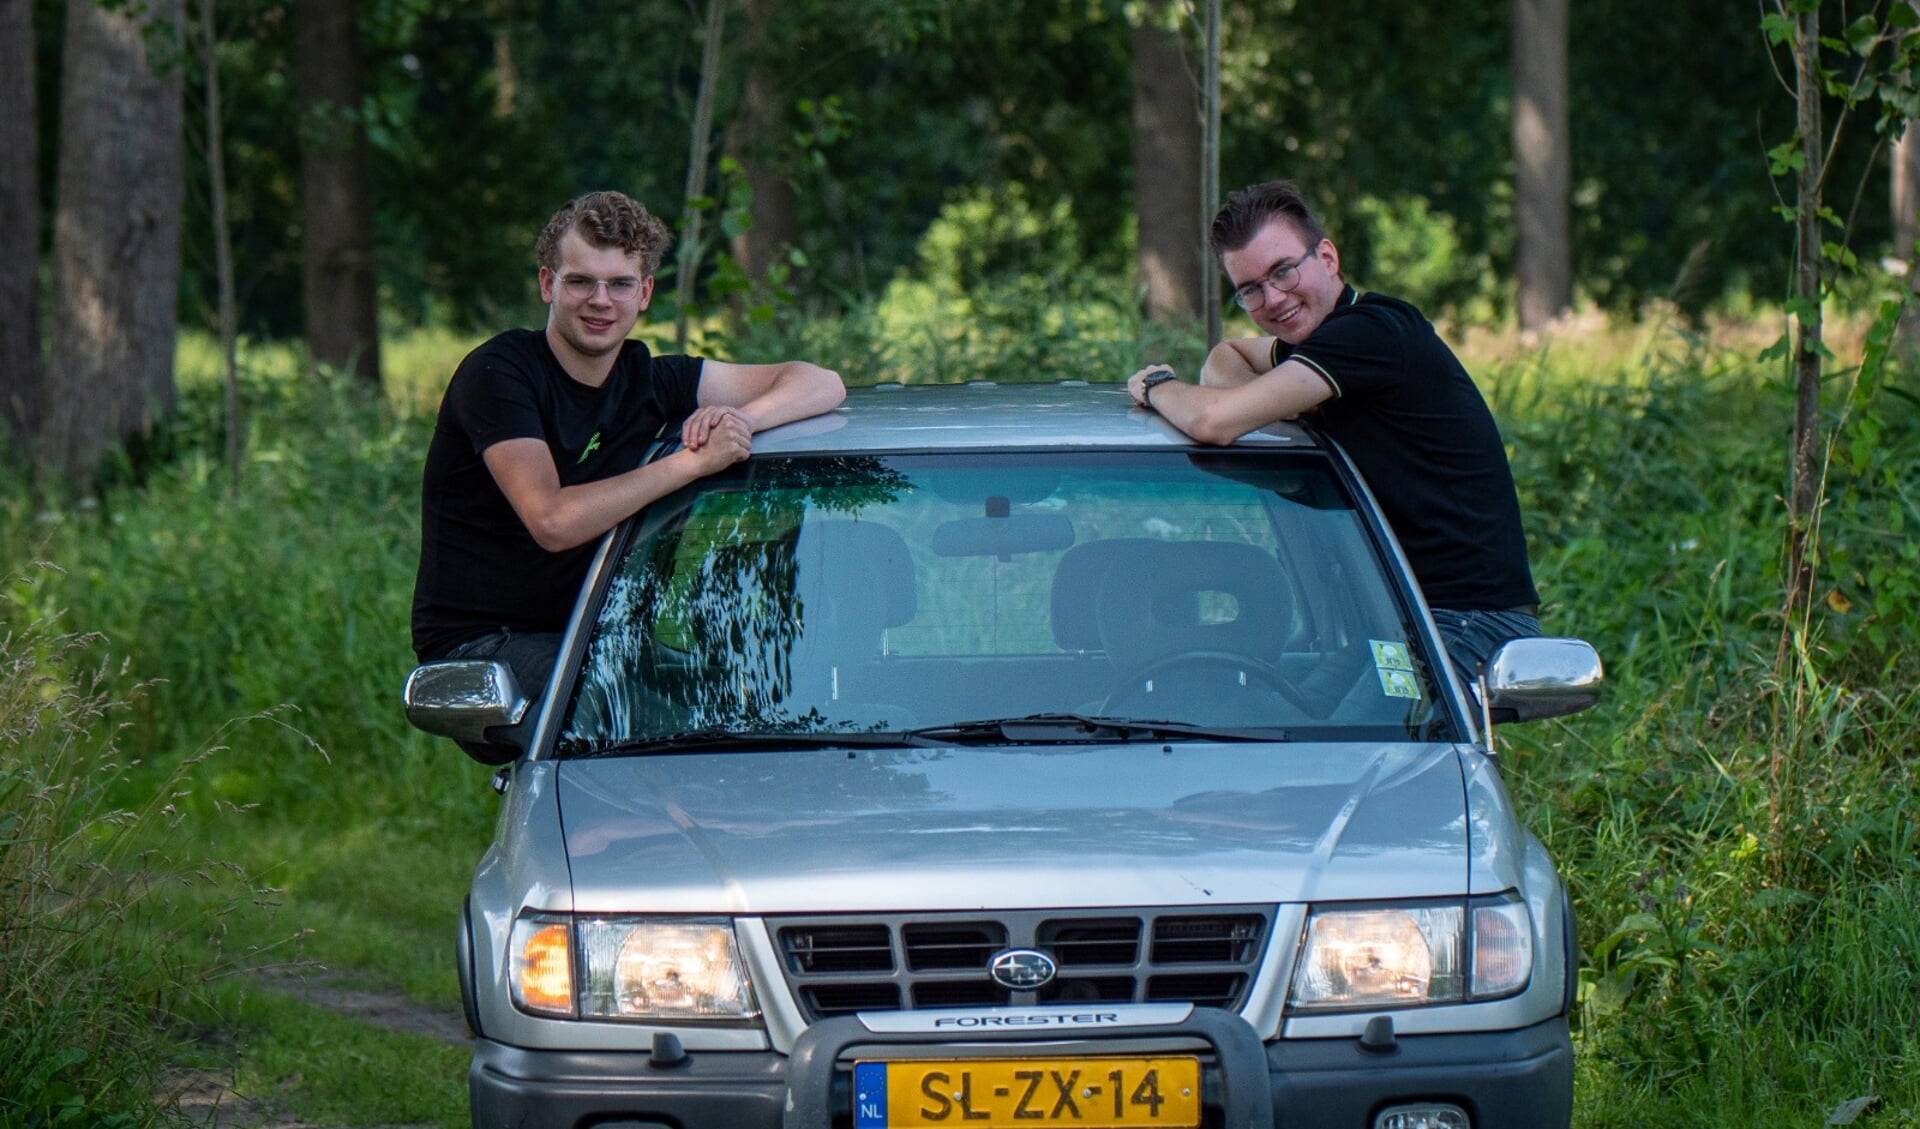 KW1C-studenten Jordy van Rumund en Yoeri van Schaik - samen Team The 4 Wheels - zijn 'ready to go'. Zij leggen de reis met een lengte van zo'n 7500 kilometer af in deze Subaru Forester uit 1997.